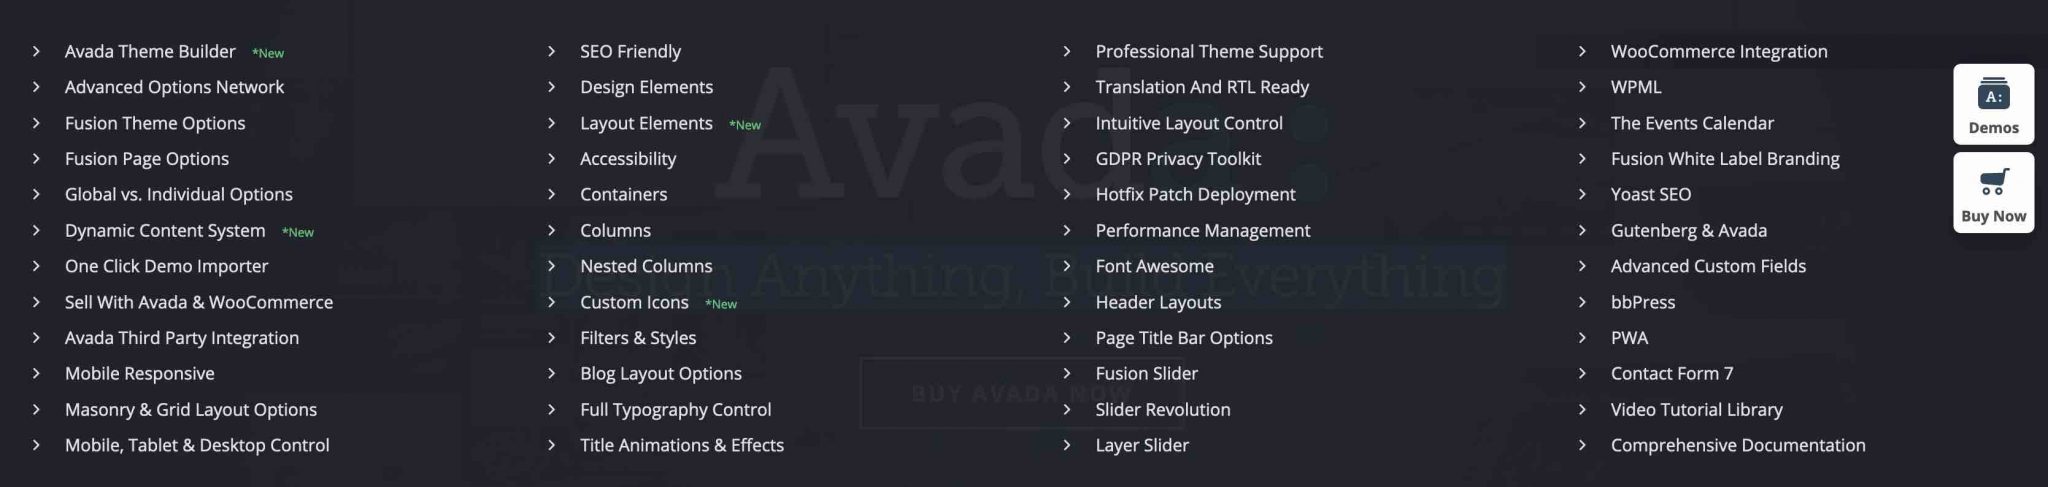 Les options d'Avada